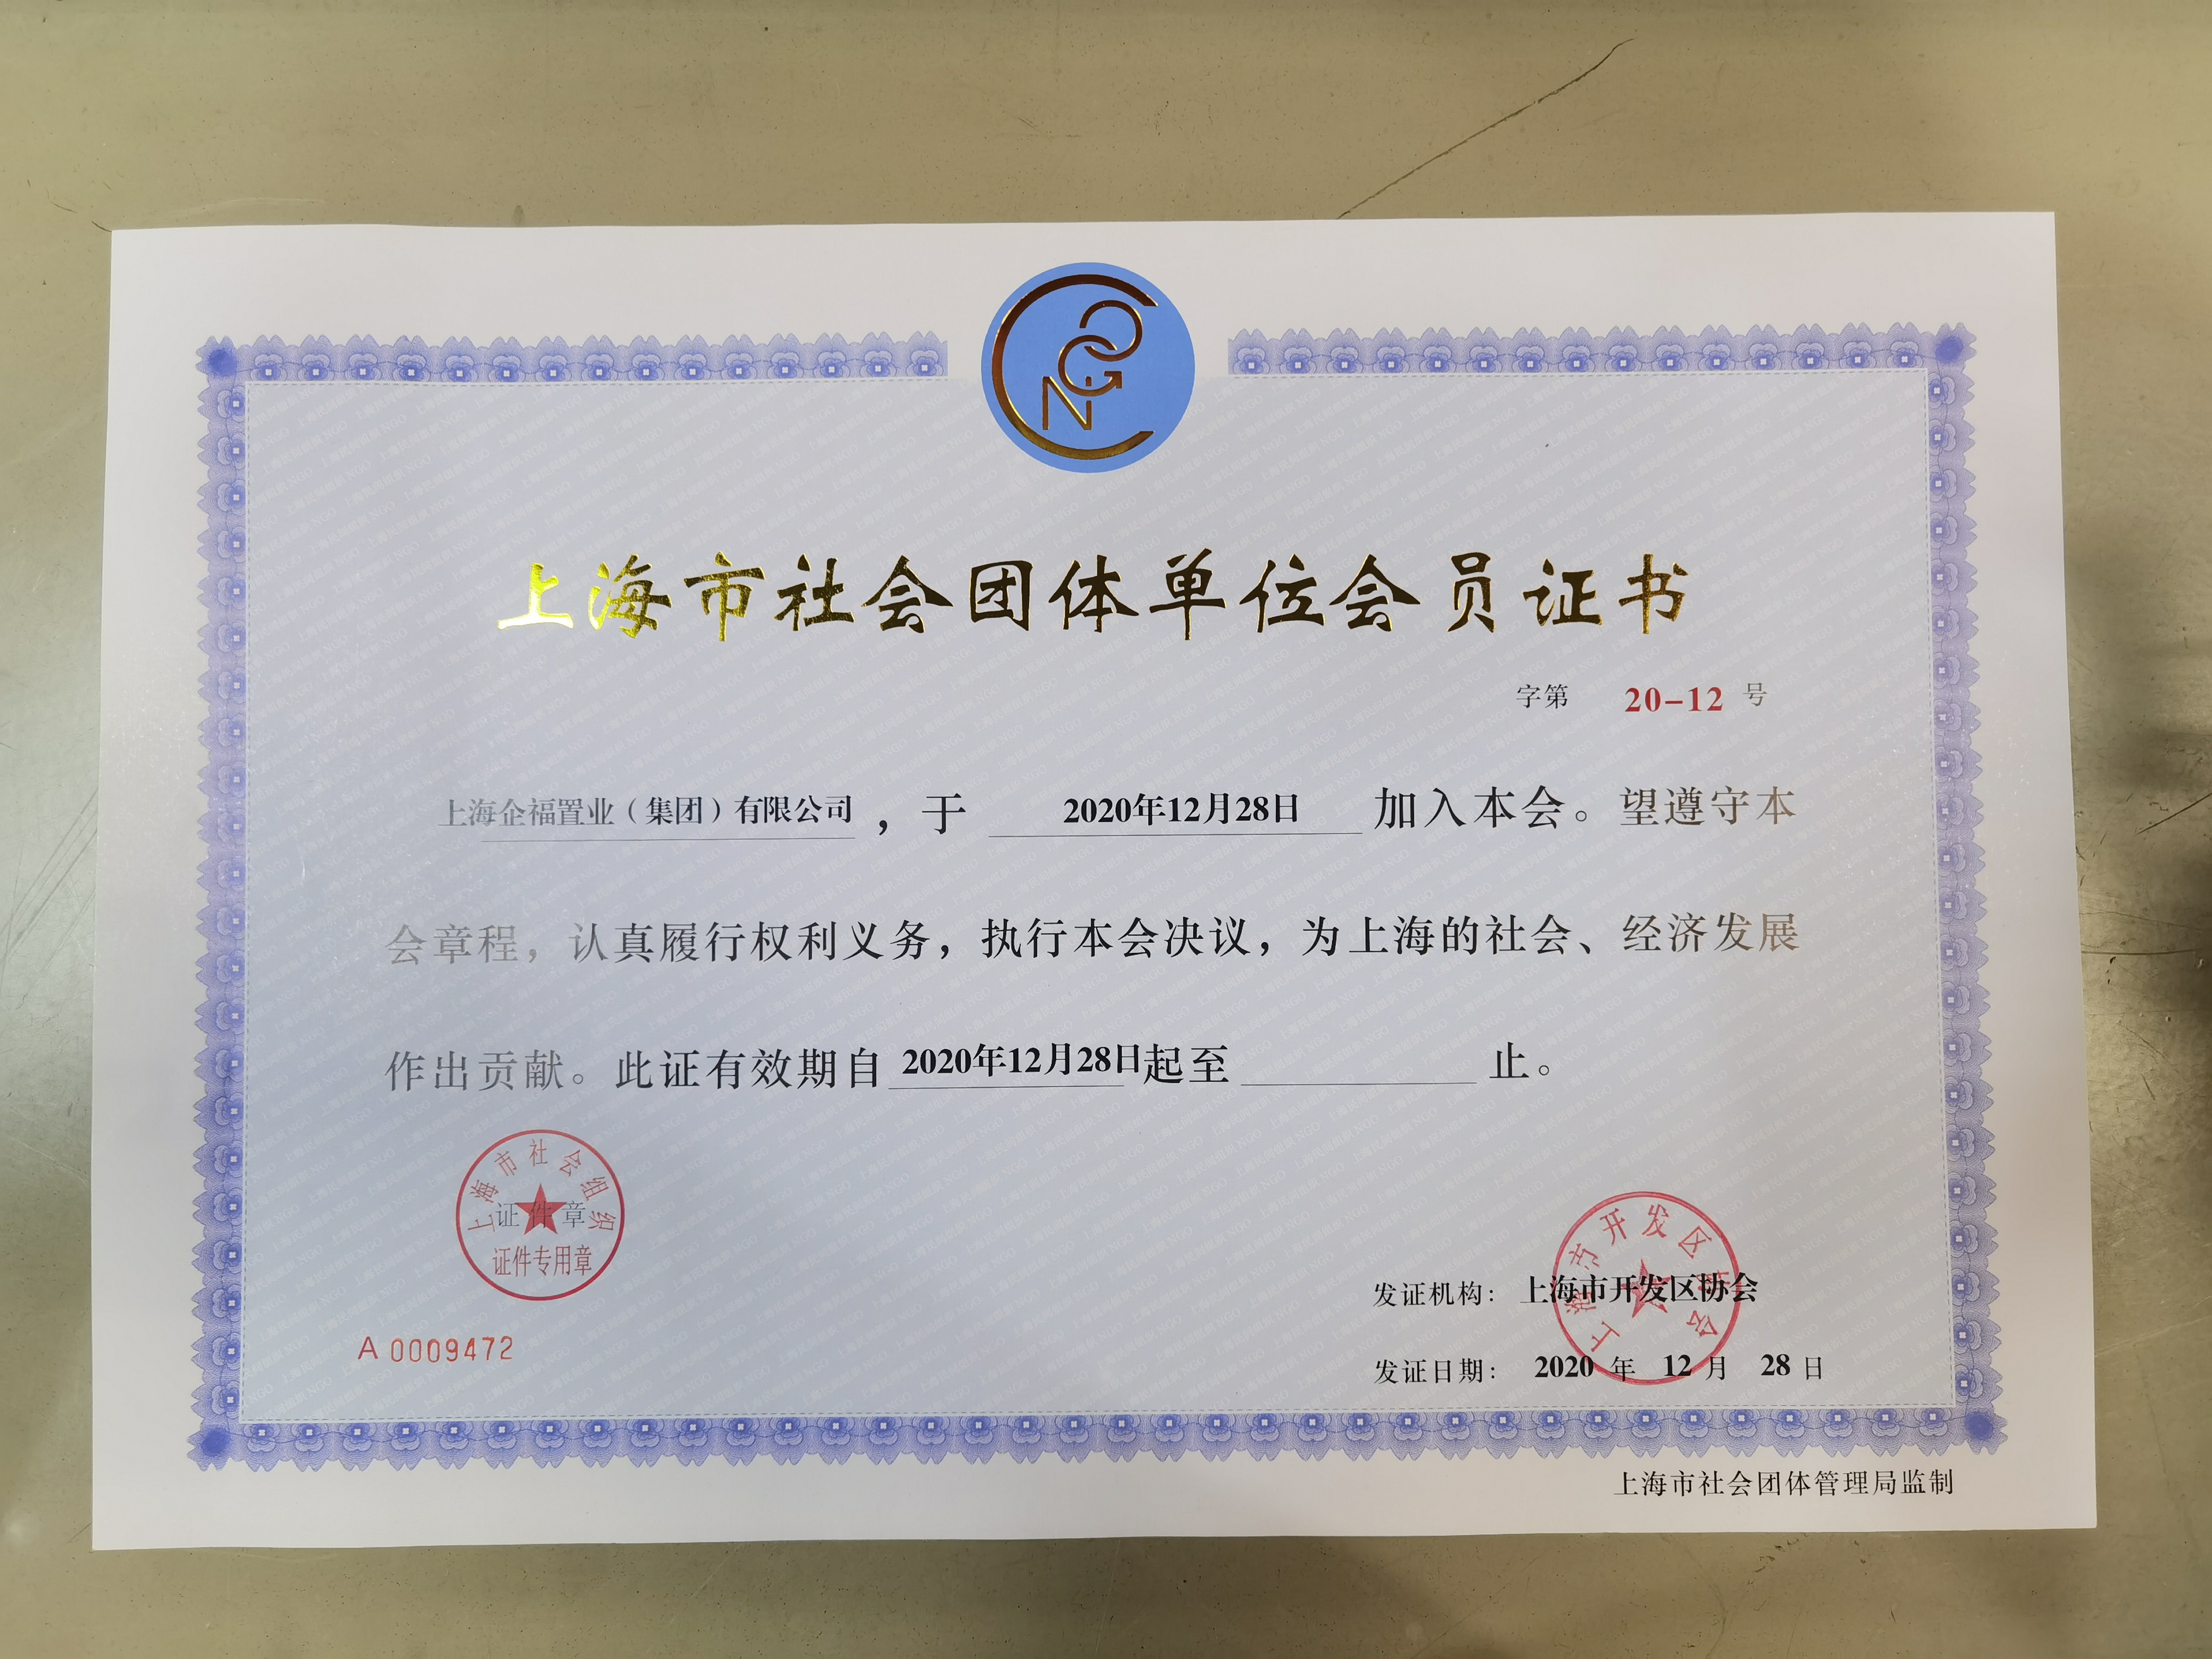 企福集团成为上海市社会团体单位会员